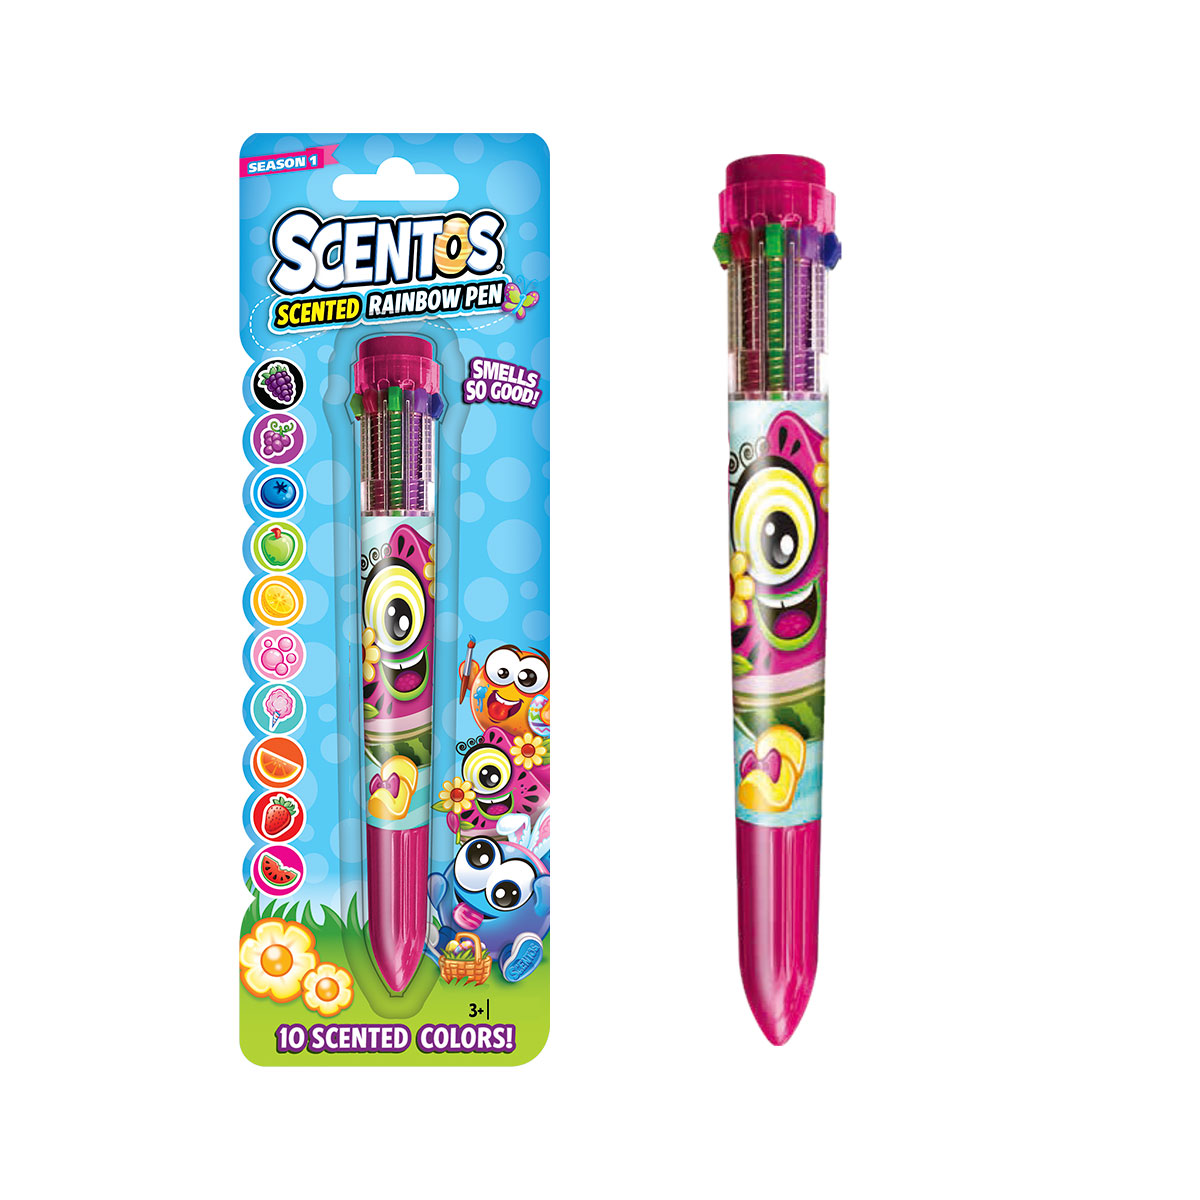 Многоцветная ароматная шариковая ручка Scentos Пасхальные краски, 10 цветов (11637-1) - фото 1